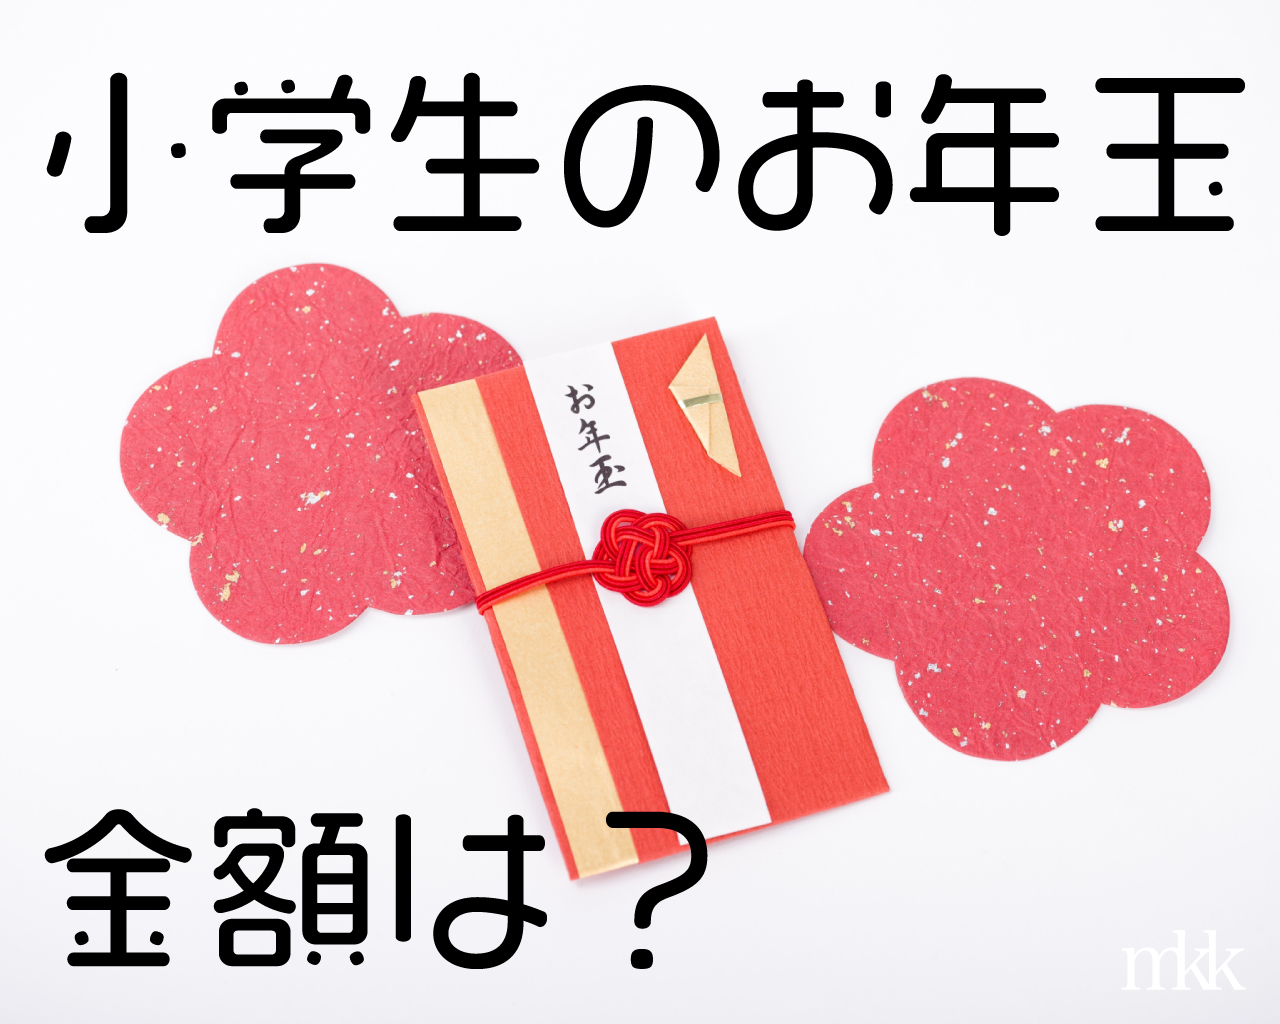 村岡花子の名言集 女性に響く言葉と意味について みかんと傘とコッペパン